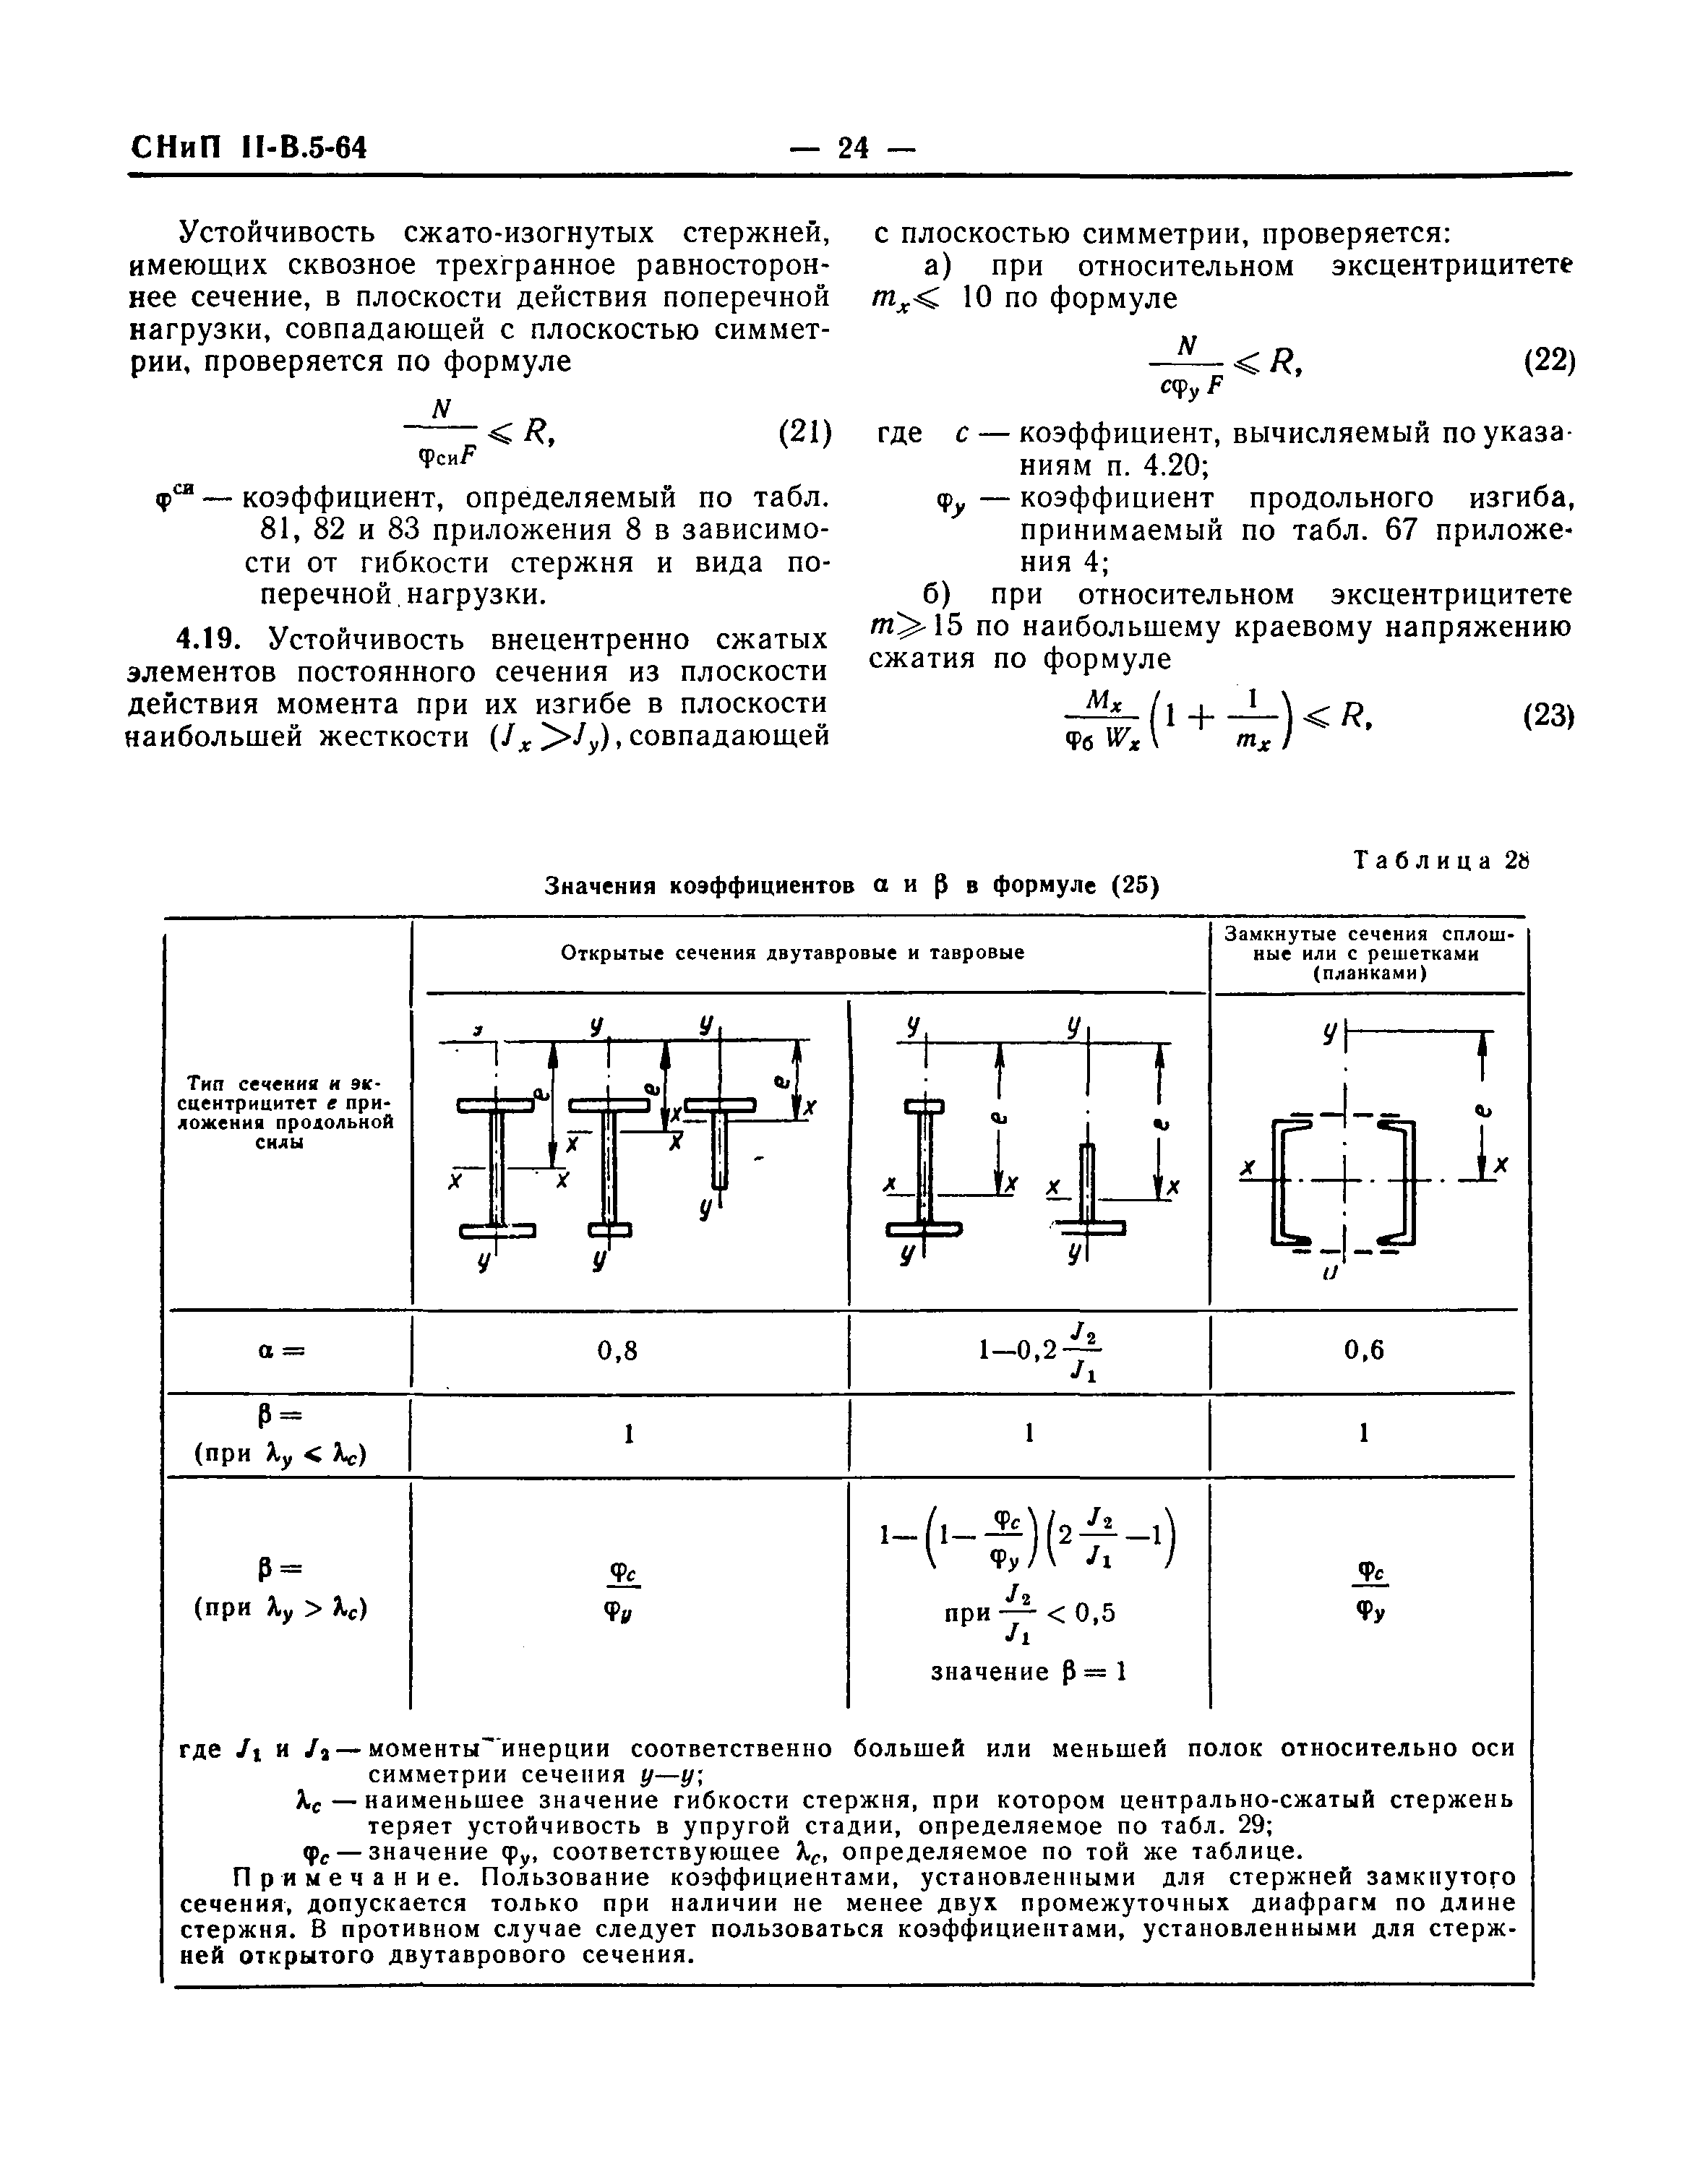 СНиП II-В.5-64